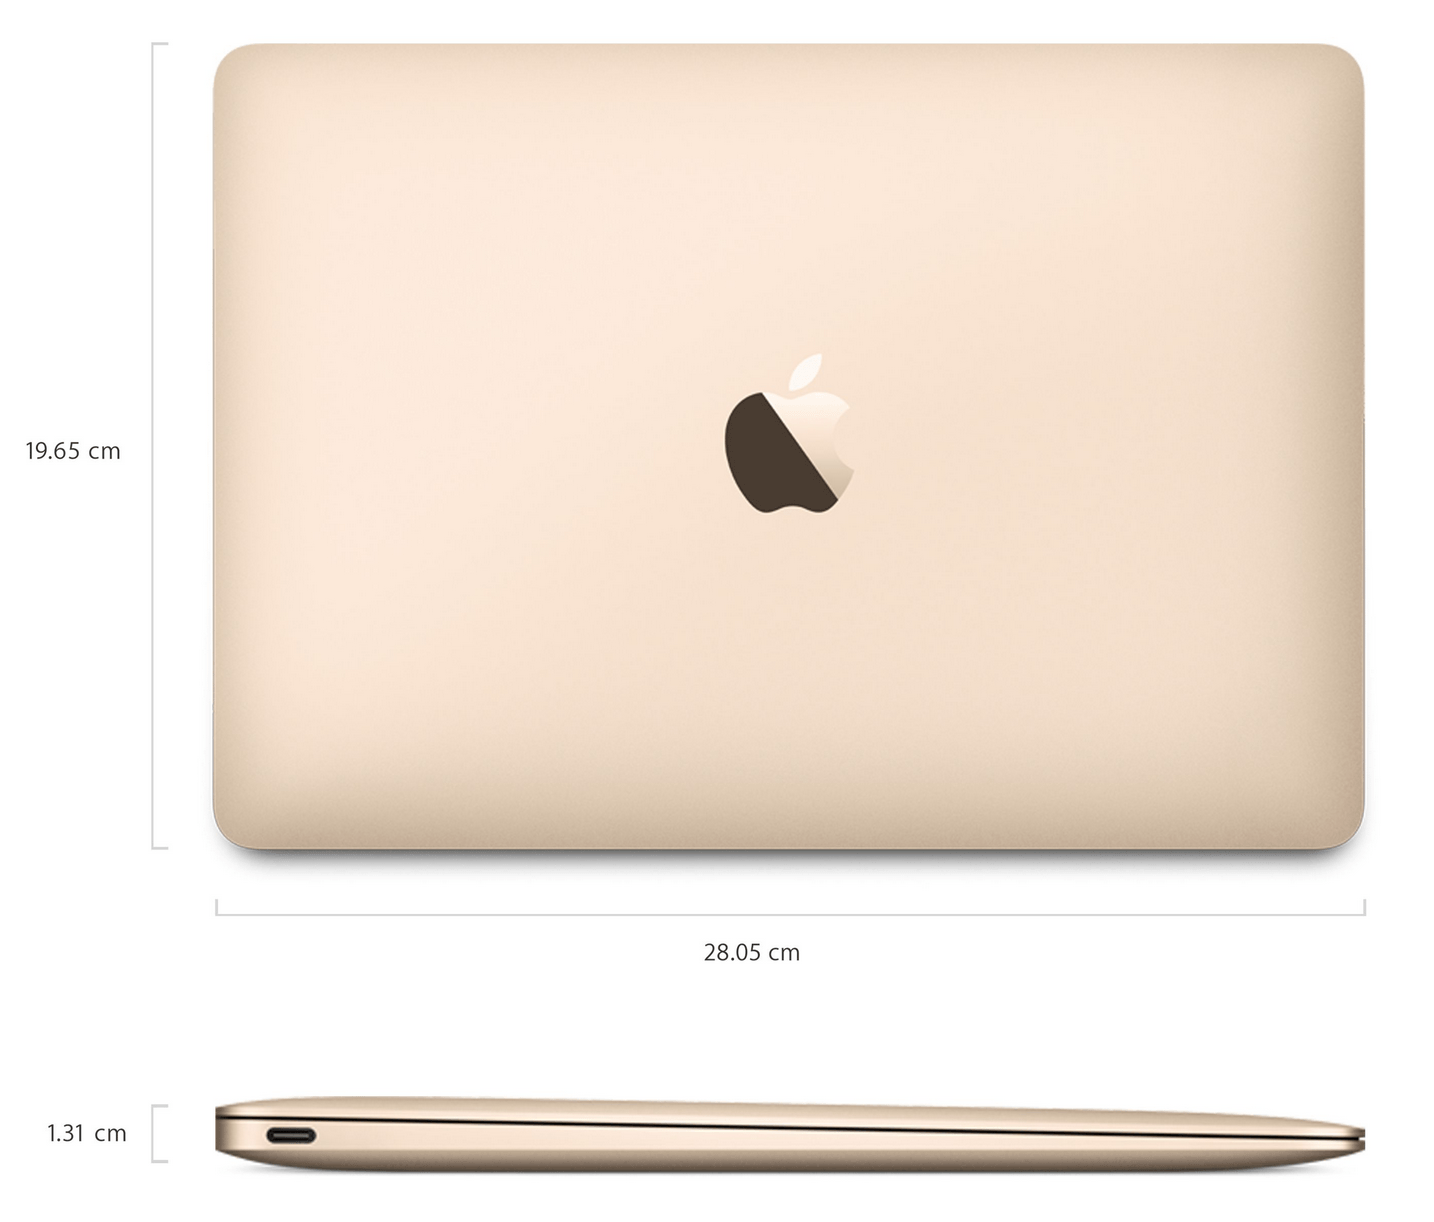 MacBook2015